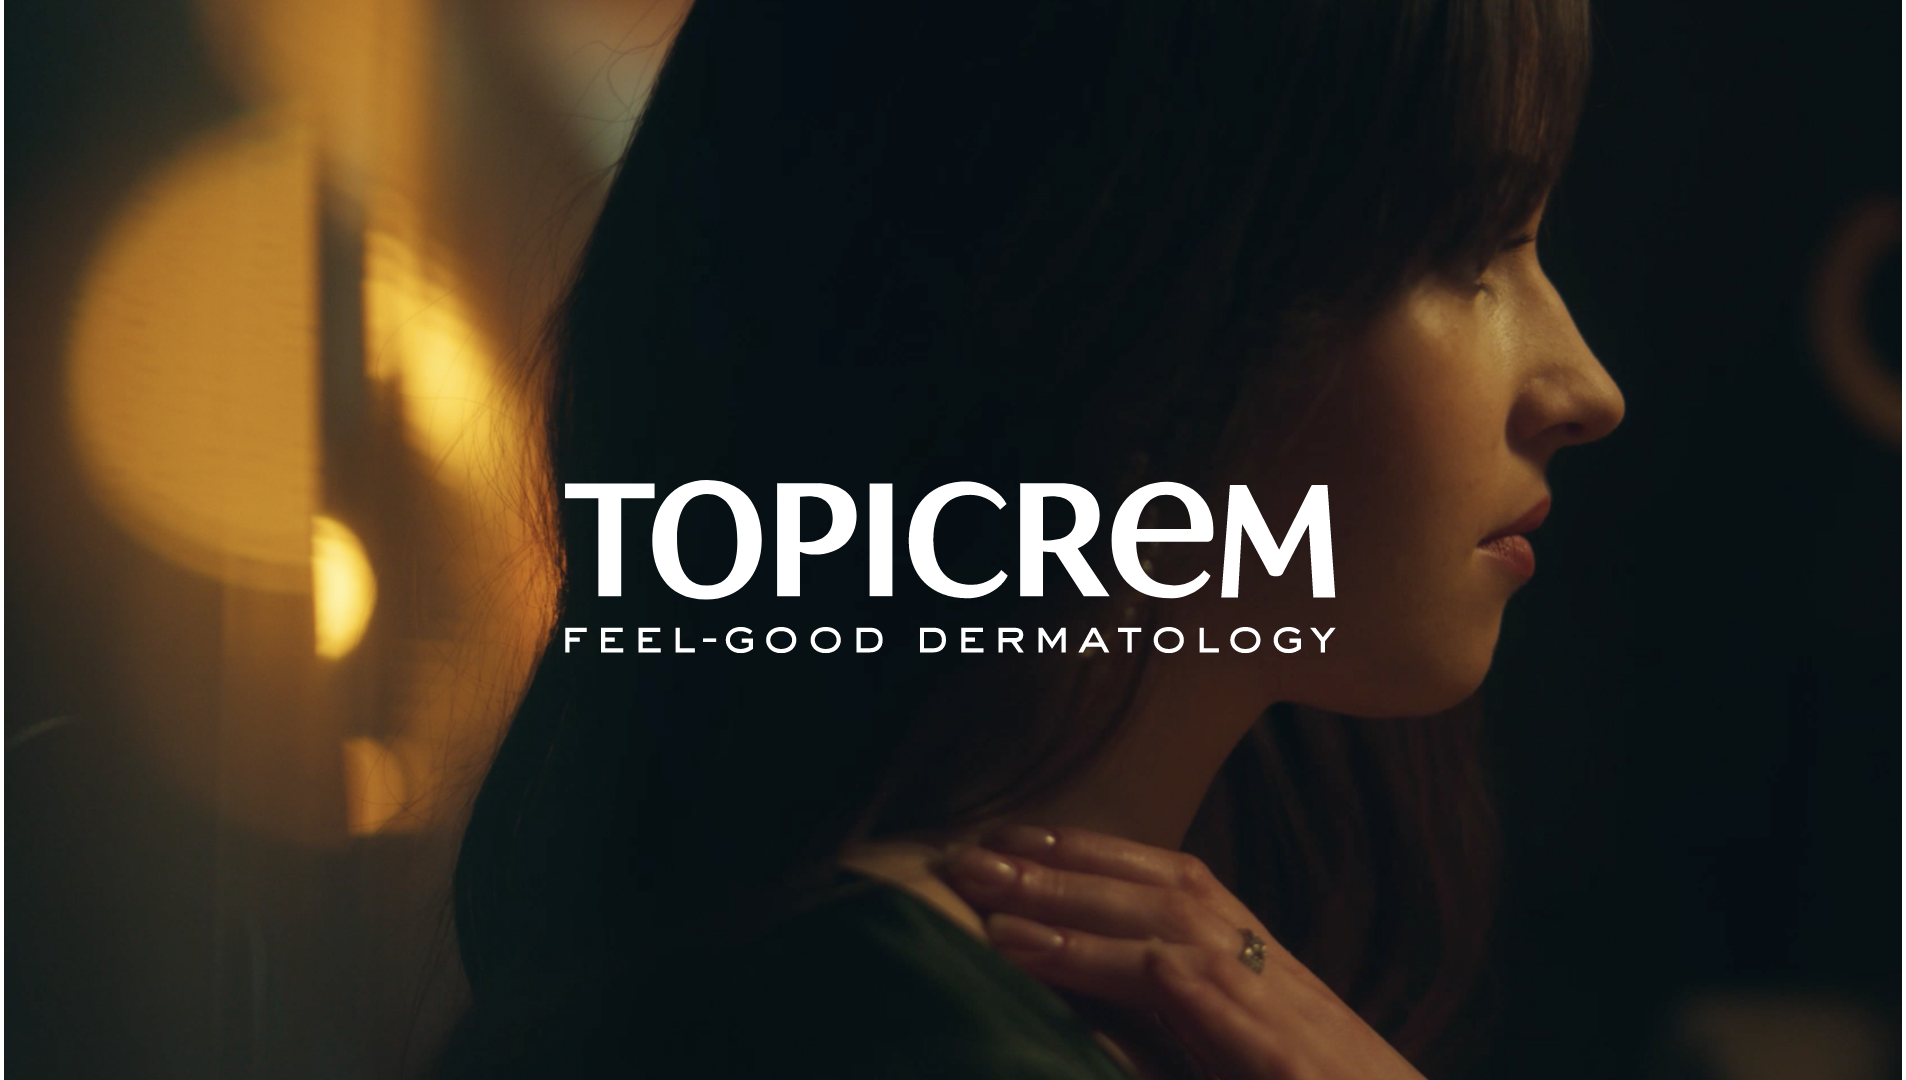 Topicrem feel-good dermatology publicité